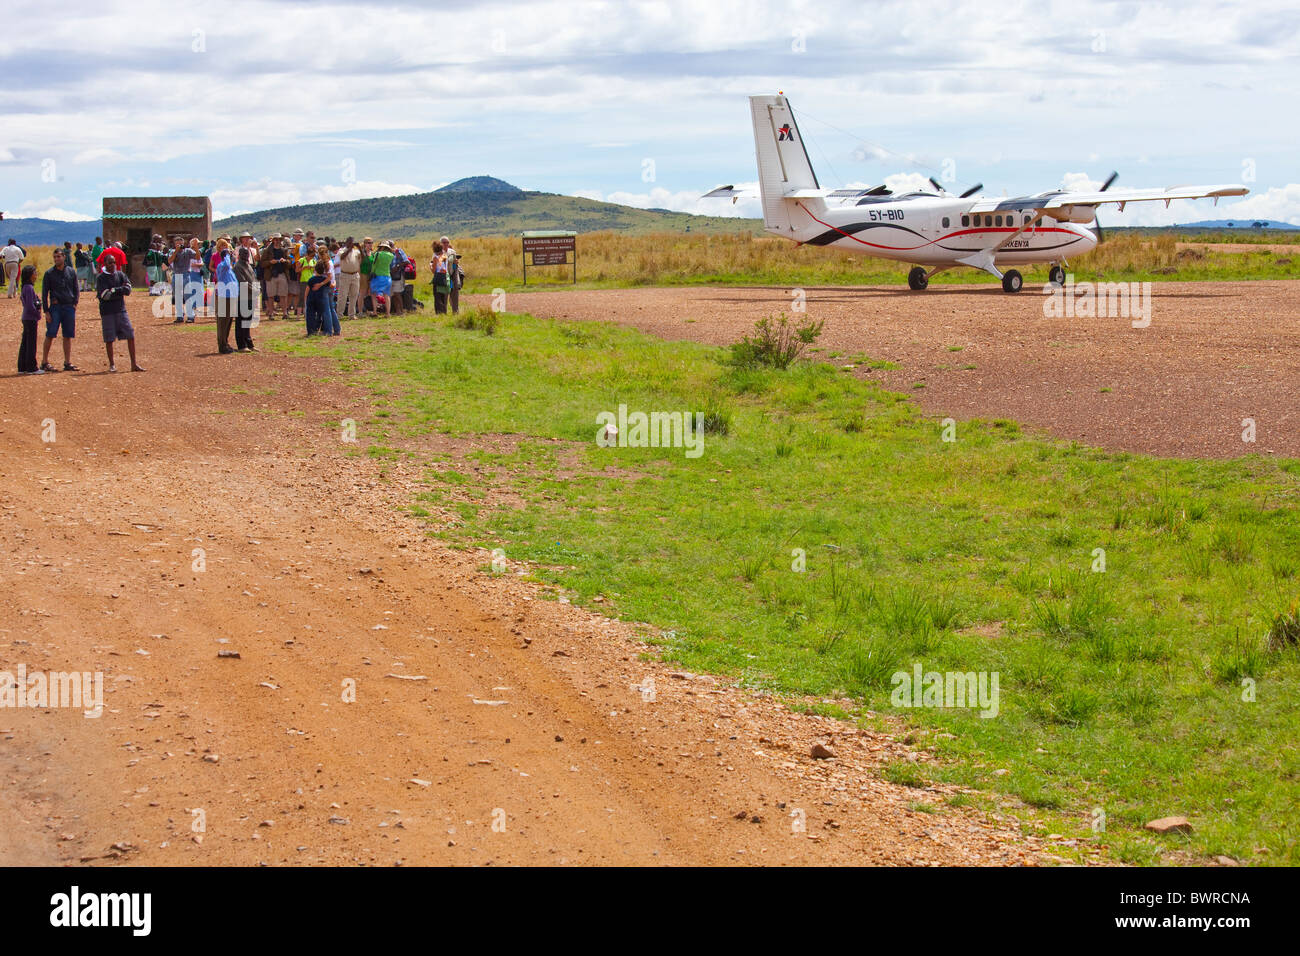 Air Kenya flight arriving in the Masai Mara, bringing tourists for safari, Kenya, East Africa Stock Photo